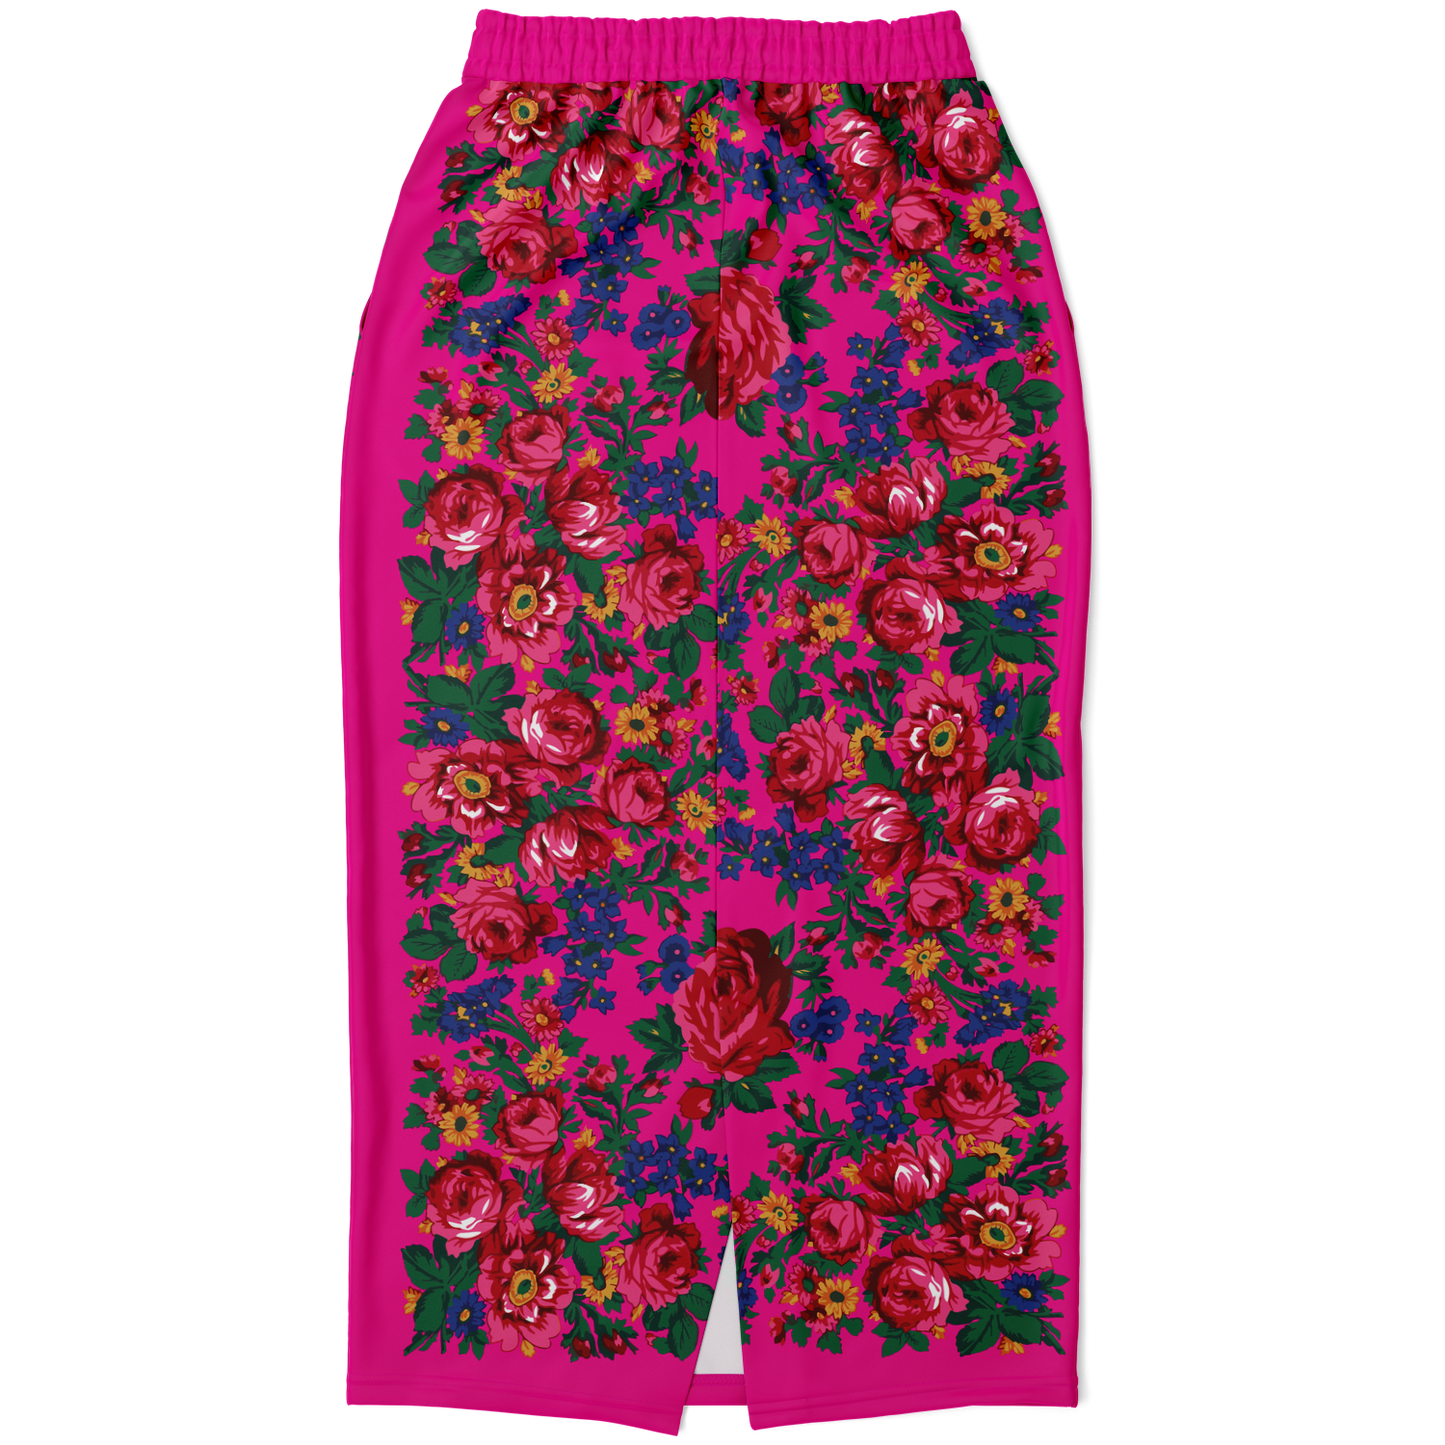 Kokum Floral (Pink) - Athletic Midi Skirt